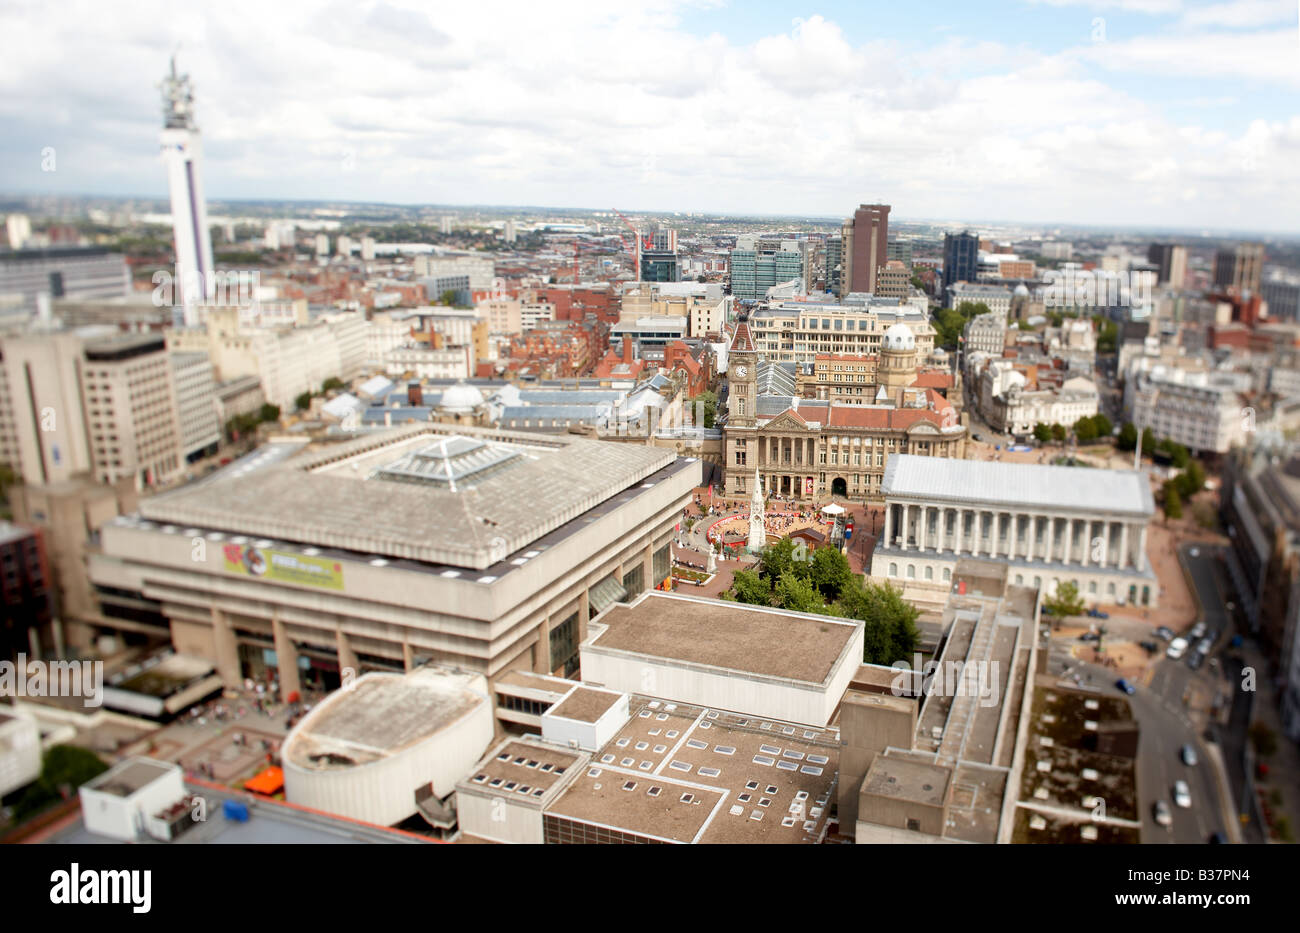 Centro de la ciudad de Birmingham, Reino Unido mostrando el ayuntamiento, biblioteca, la Torre BT y centro comercial. Foto de stock